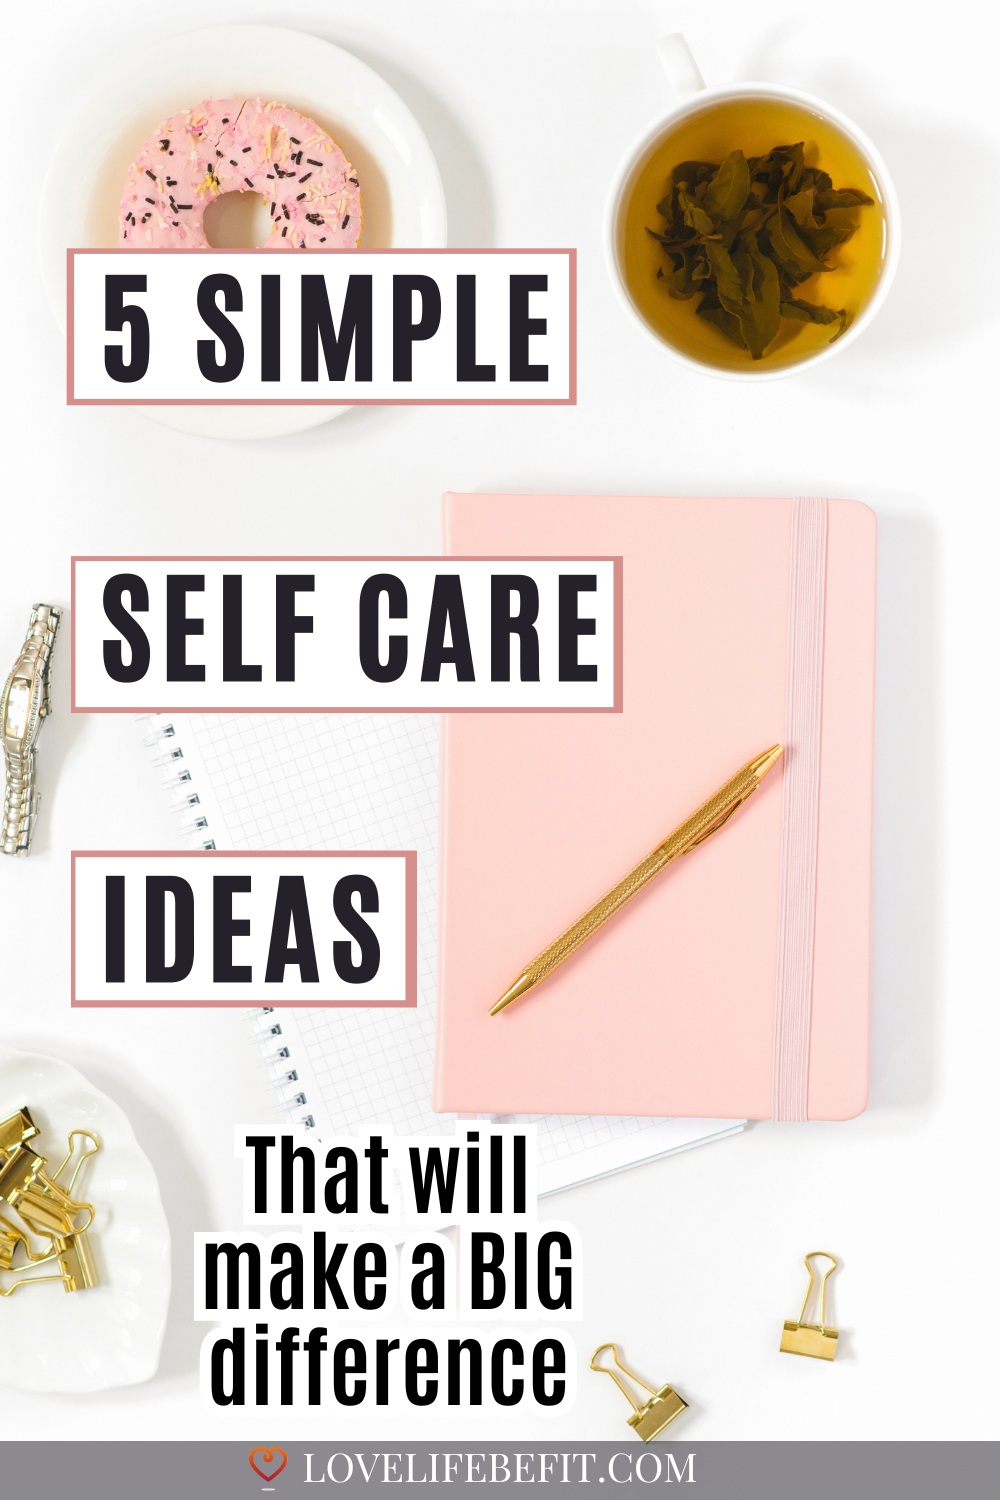 Simple Self Care Ideas